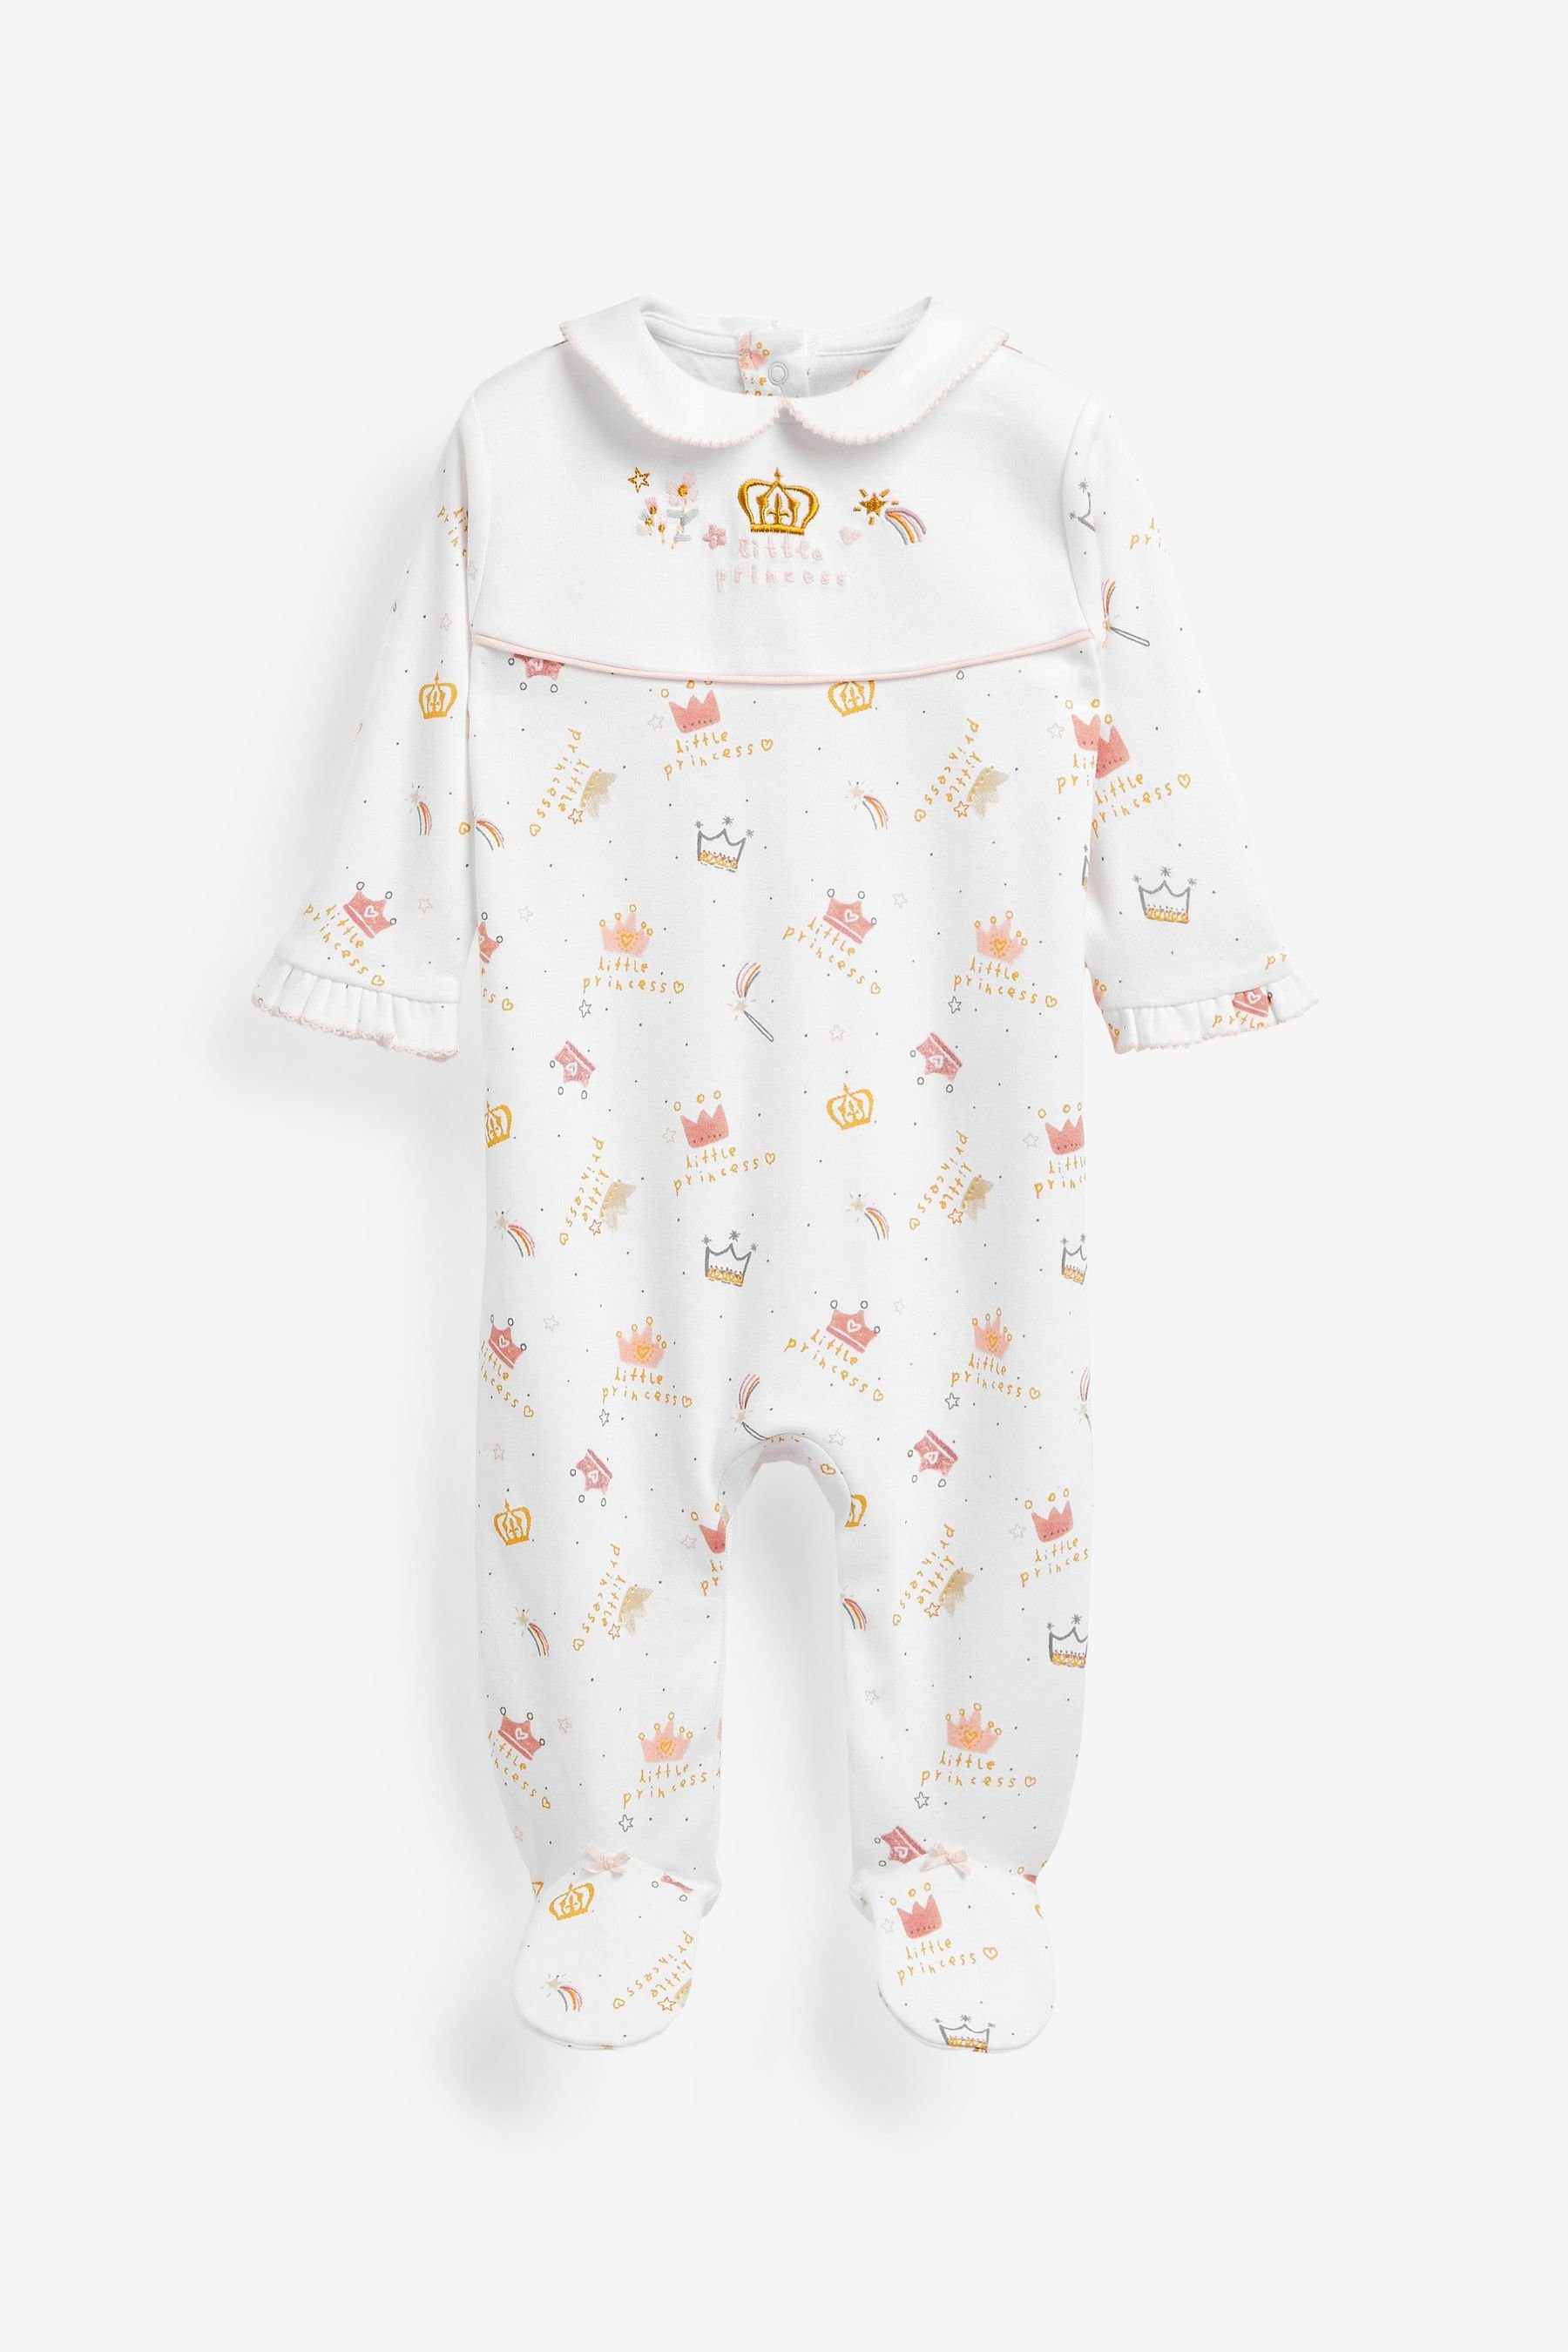 Next Schlafoverall »Single Baby-Schlafanzug mit Print« online kaufen | OTTO